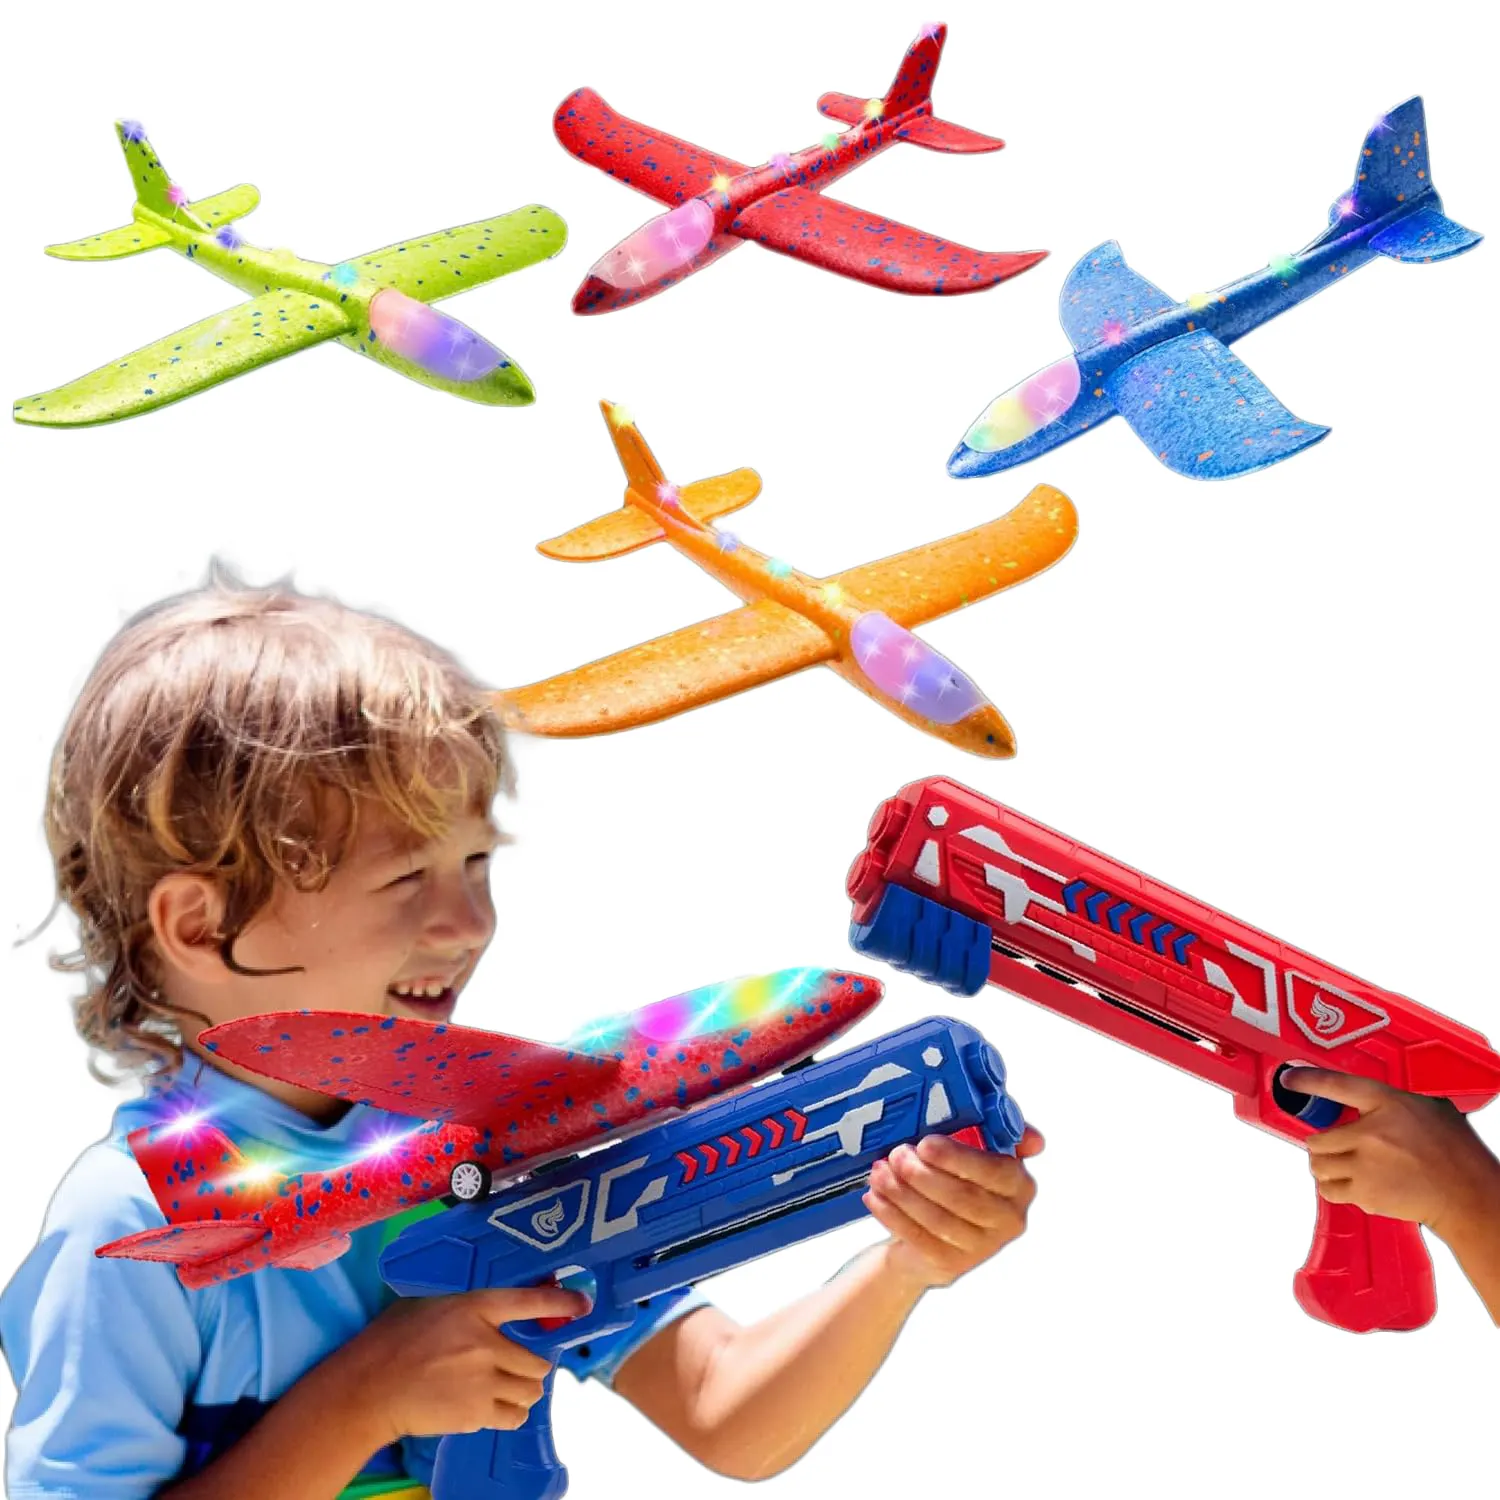 베스트 셀러 방출 비행기 총 슈팅 런처 세트 거품 비행기 장난감 어린이를위한 야외 스포츠 비행 장난감